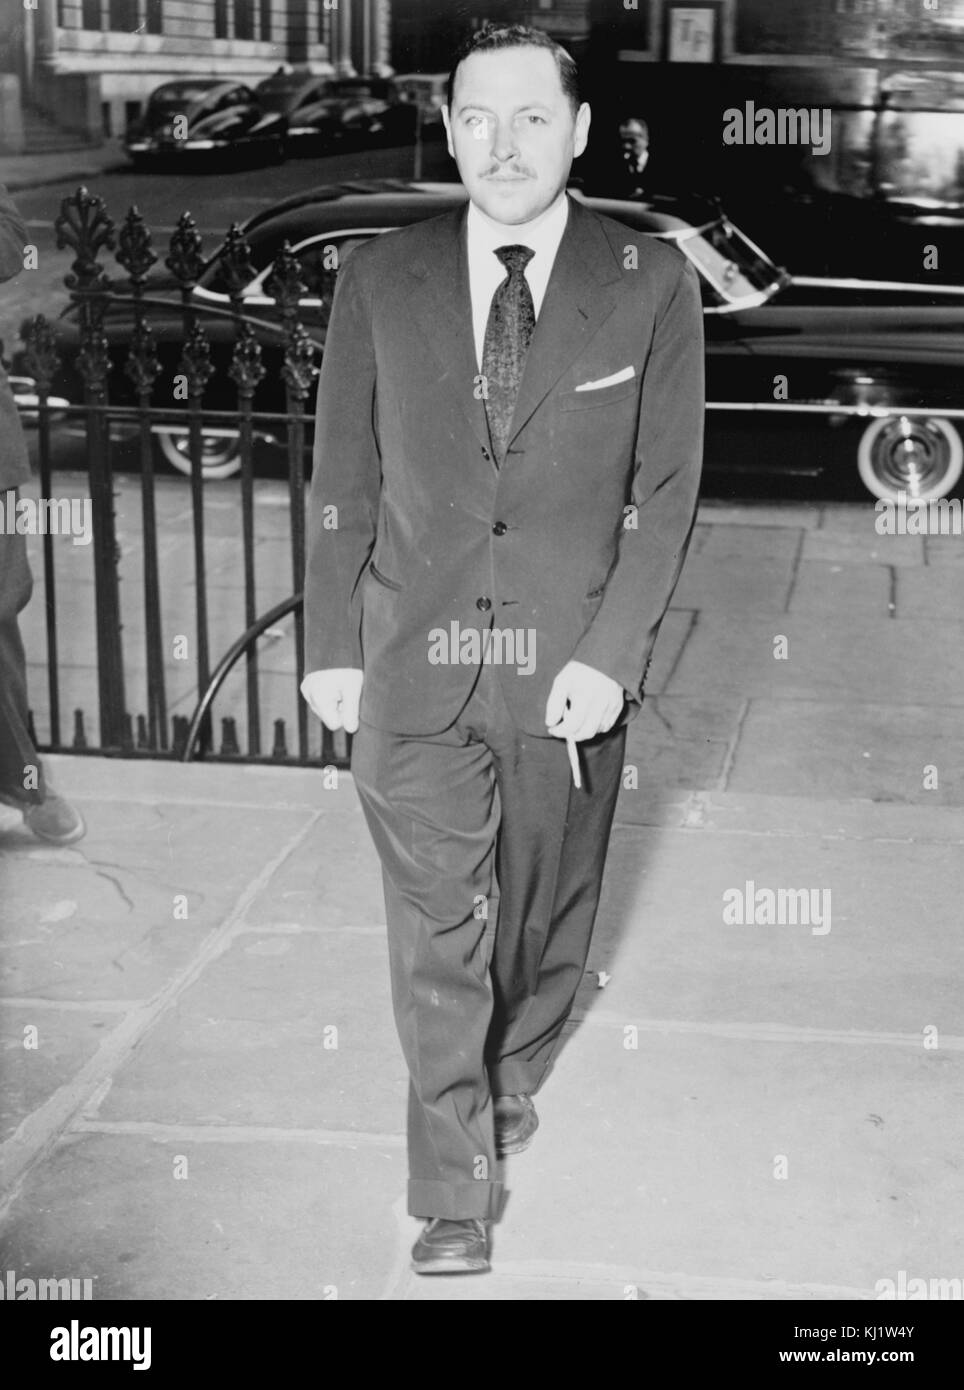 Tennessee Williams, 1953. Thomas Lanier 'Tennessee Williams III" (26 de marzo de 1911 - 25 de febrero de 1983) fue un dramaturgo norteamericano. Junto con Eugene O'Neill y Arthur Miller está considerado como uno de los tres principales dramaturgos en 20th-century American drama Foto de stock